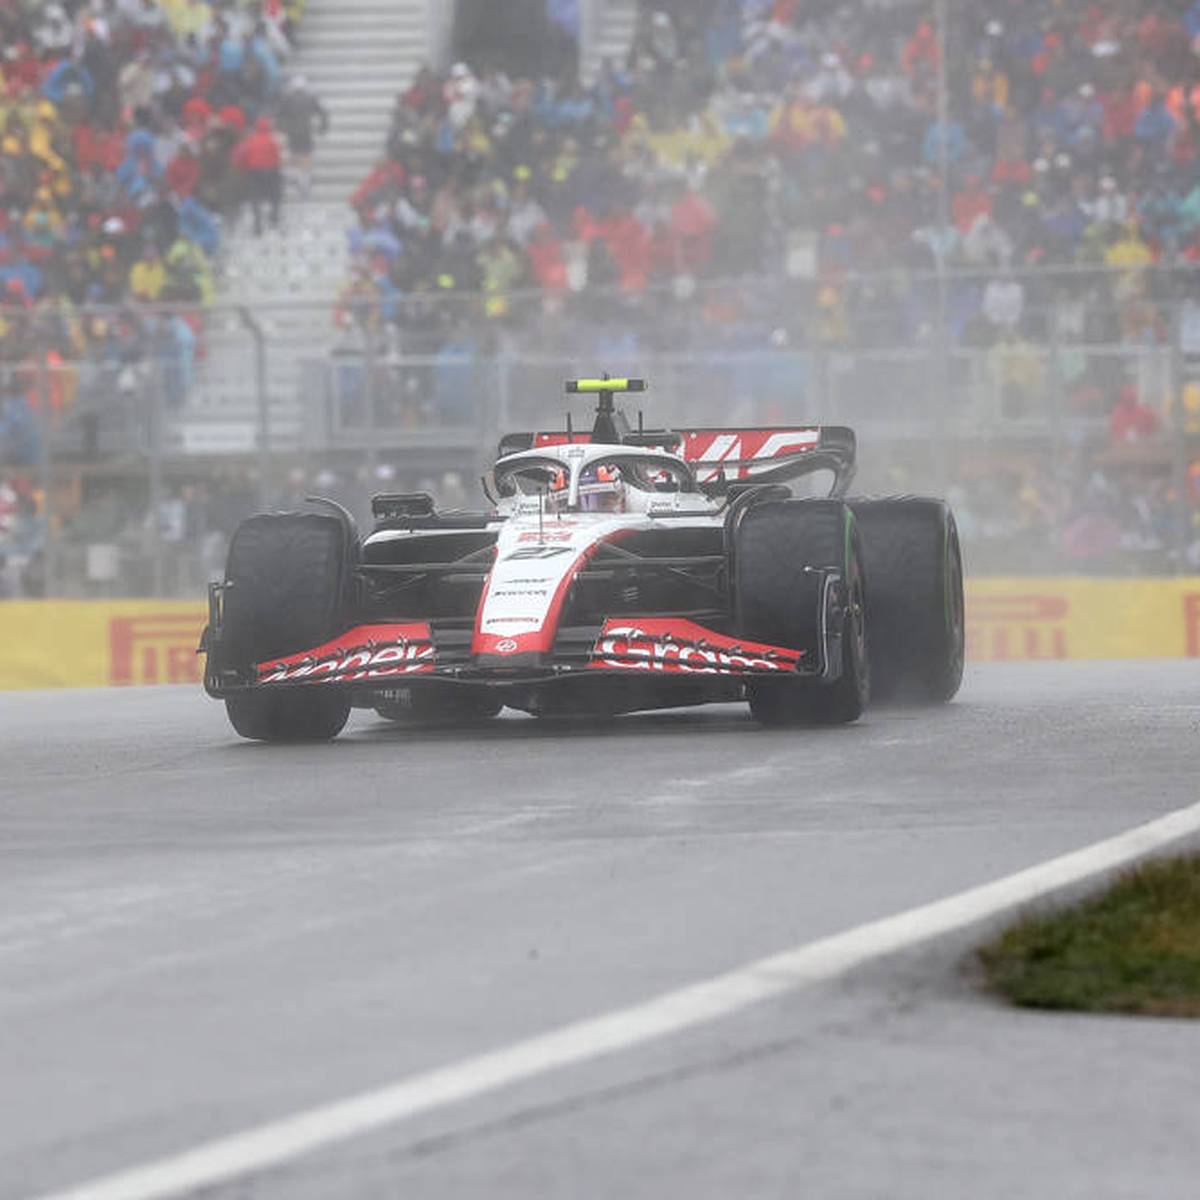 Formel 1 in Montreal Kanada-GP mit Verstappen, Hamilton und Hülkenberg LIVE im TV, Stream, Ticker